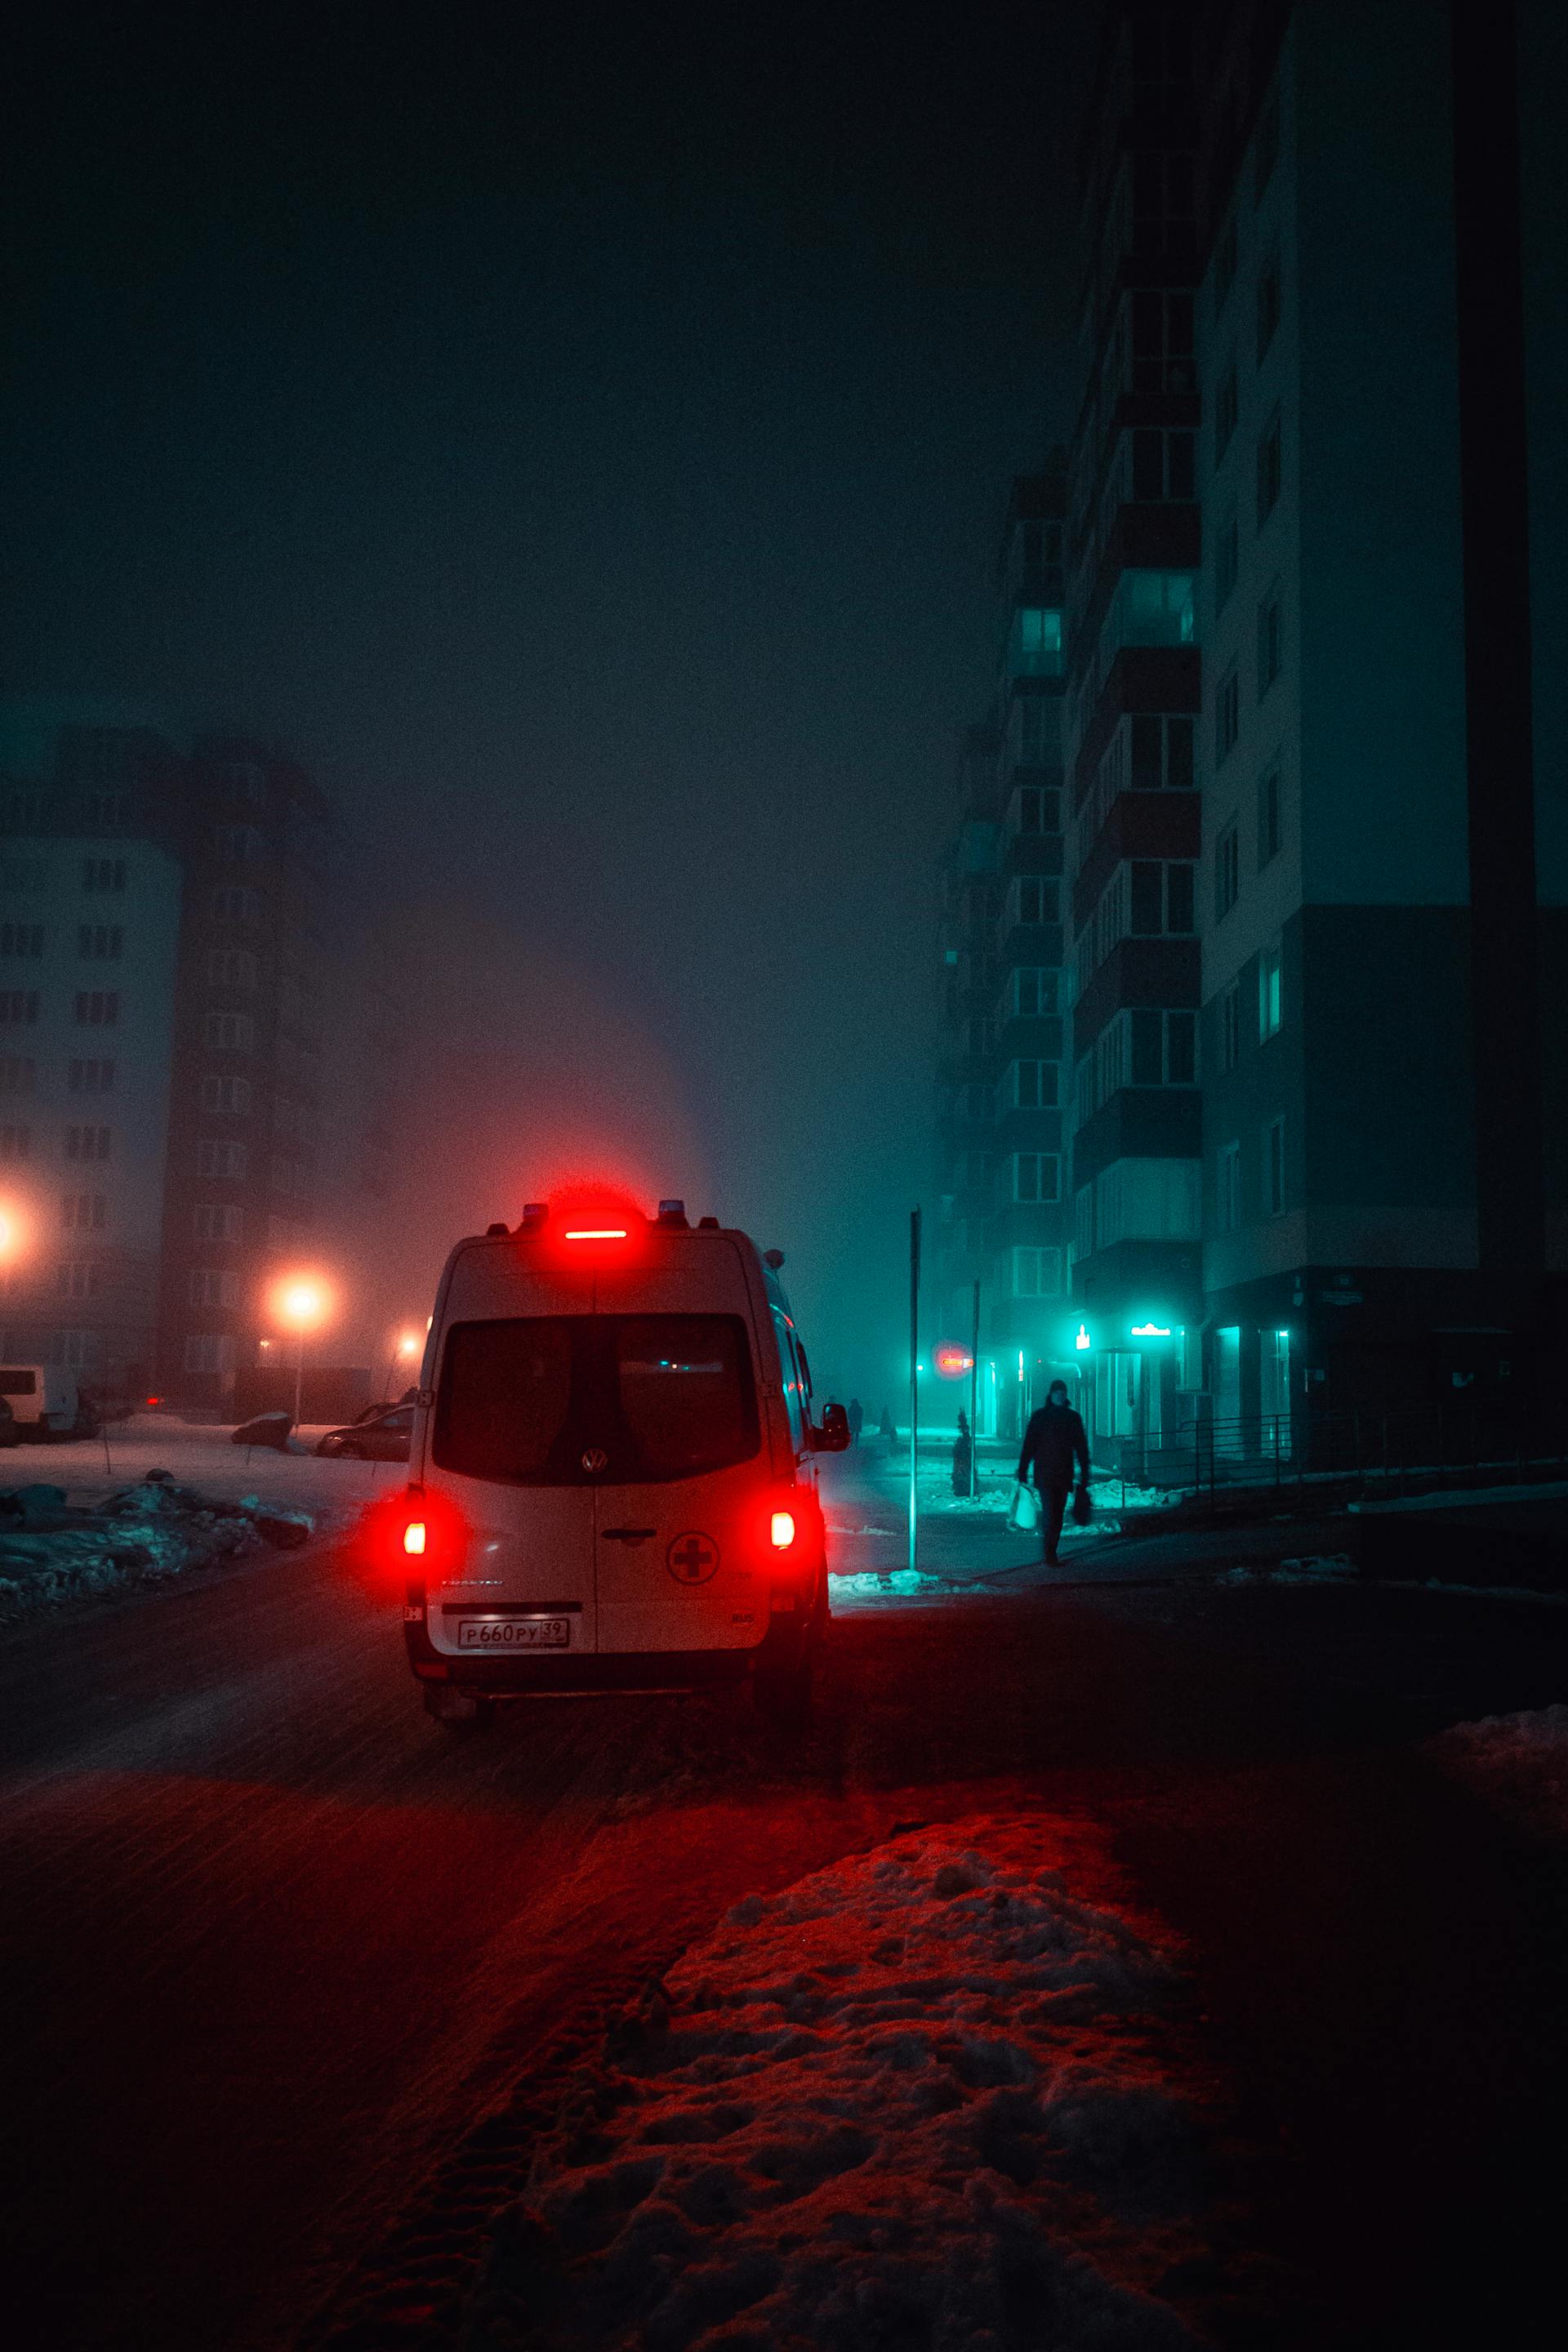 Una ambulancia de noche | Fuente: Pexels